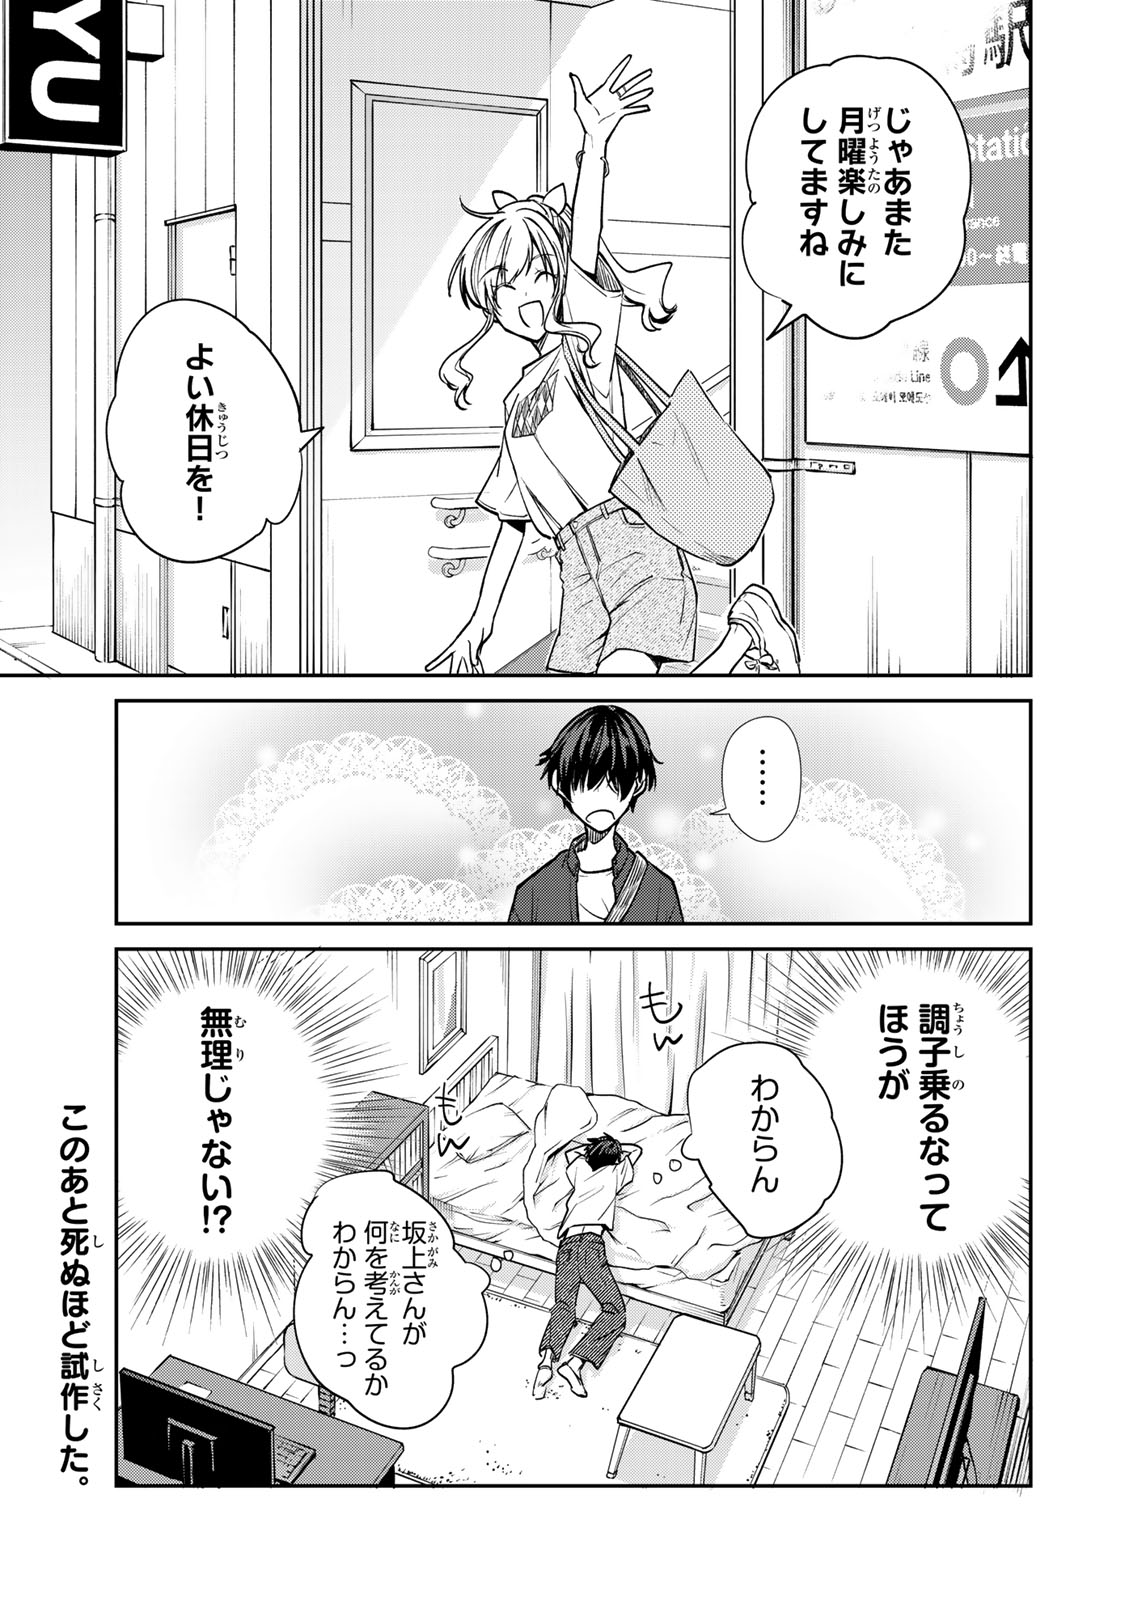 Kyou no Ohiru wa Nan desu ka? - Chapter 4 - Page 19